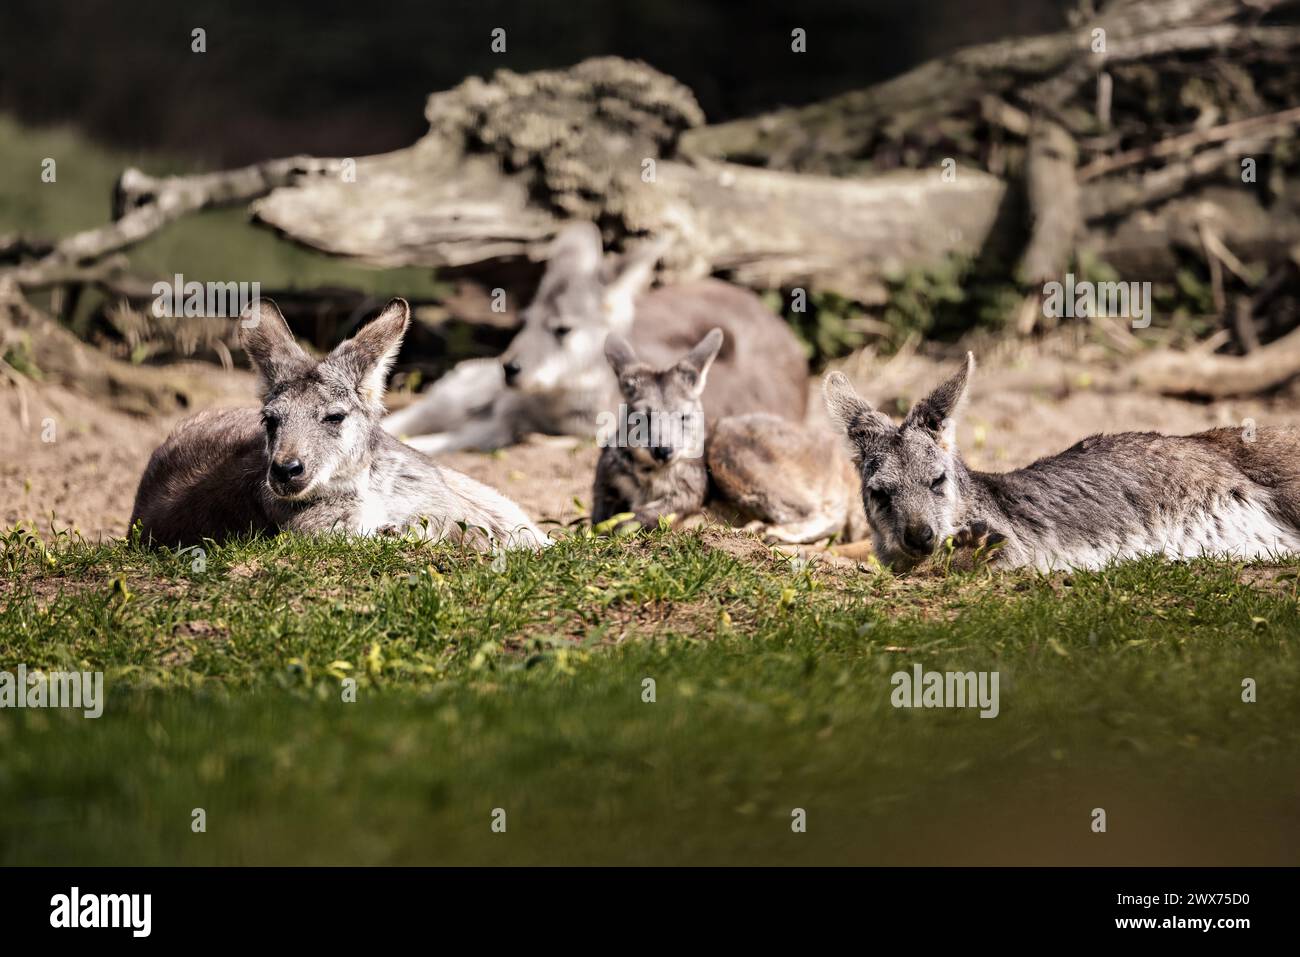 A group of donkeys resting in a field beside a fallen tree Stock Photo